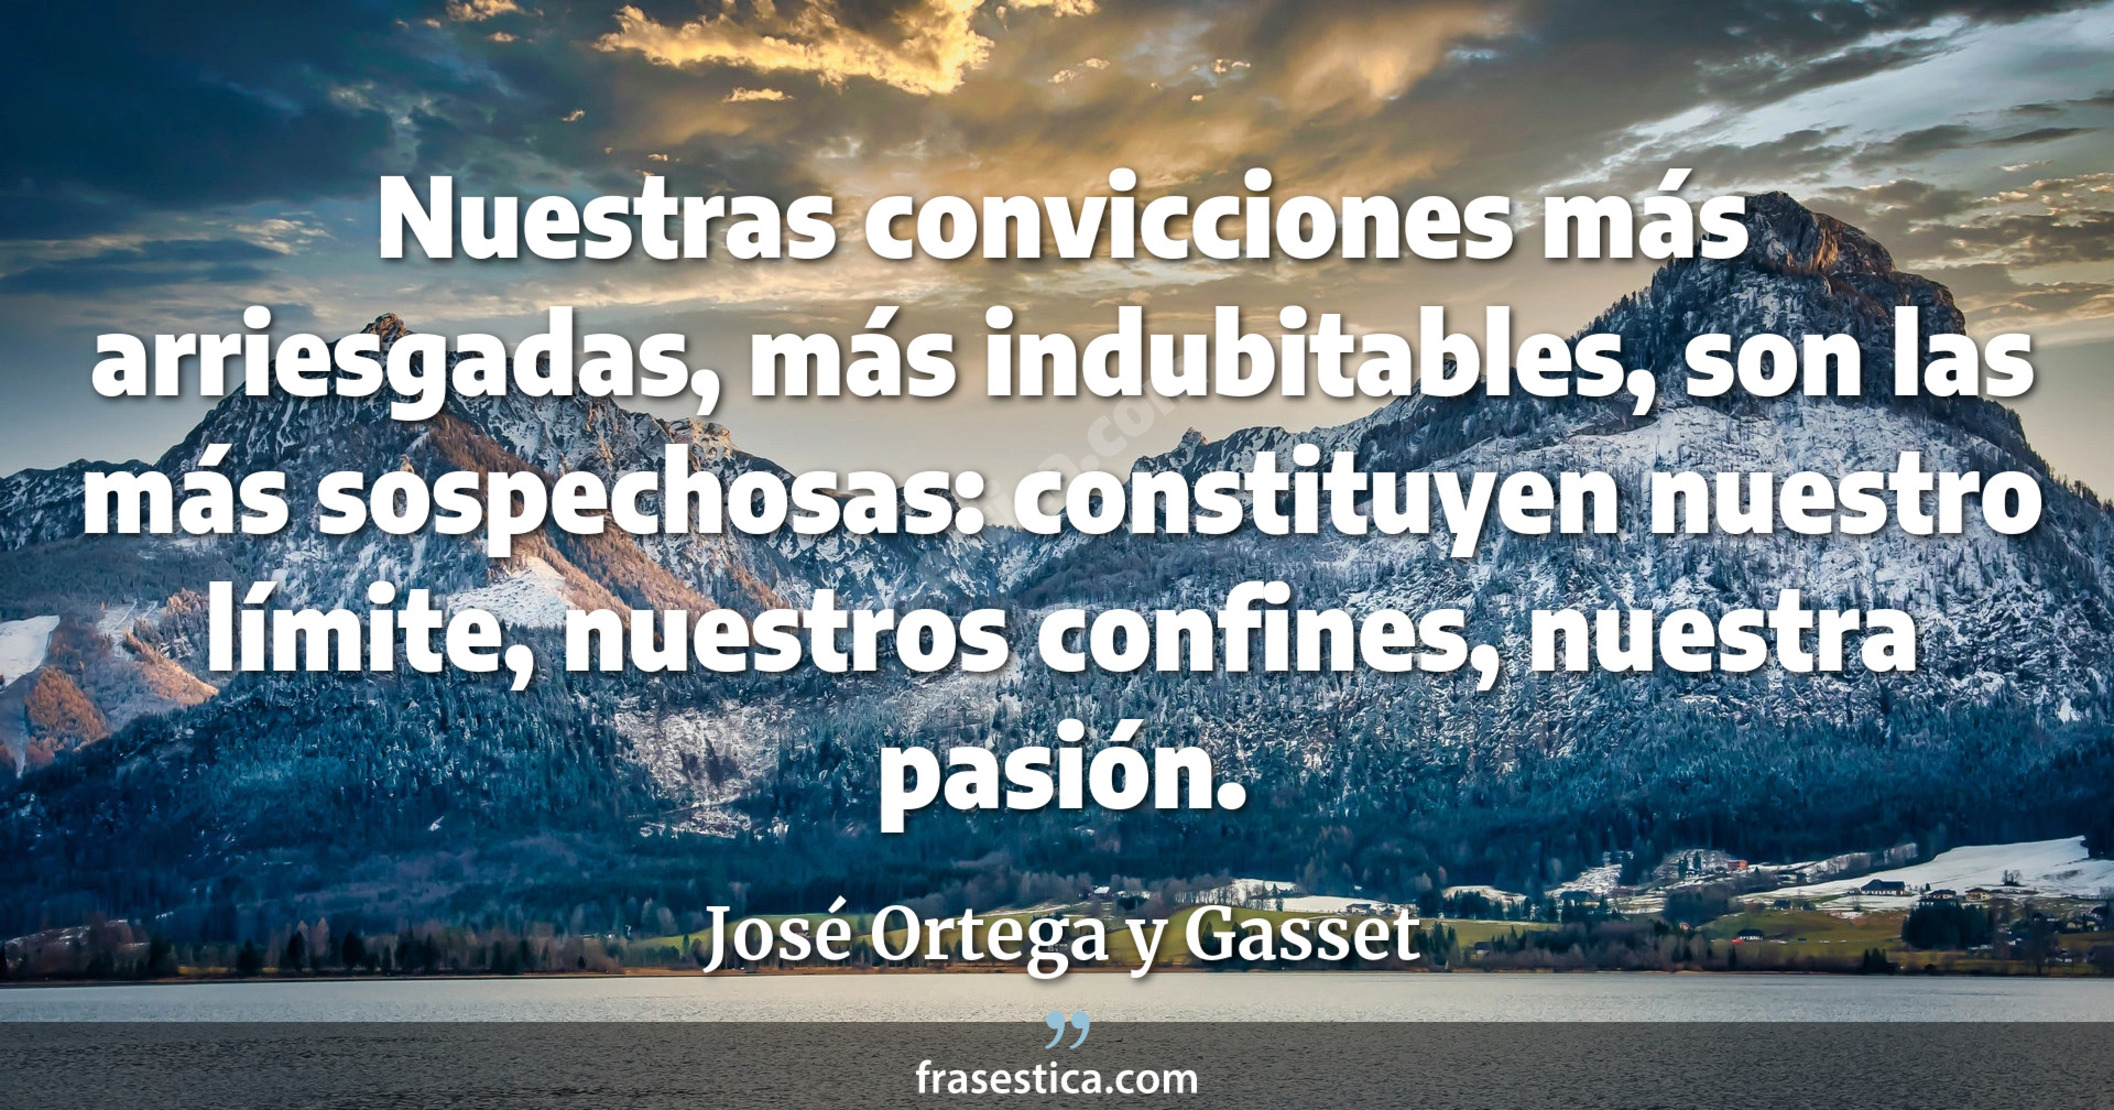 Nuestras convicciones más arriesgadas, más indubitables, son las más sospechosas: constituyen nuestro límite, nuestros confines, nuestra pasión. - José Ortega y Gasset